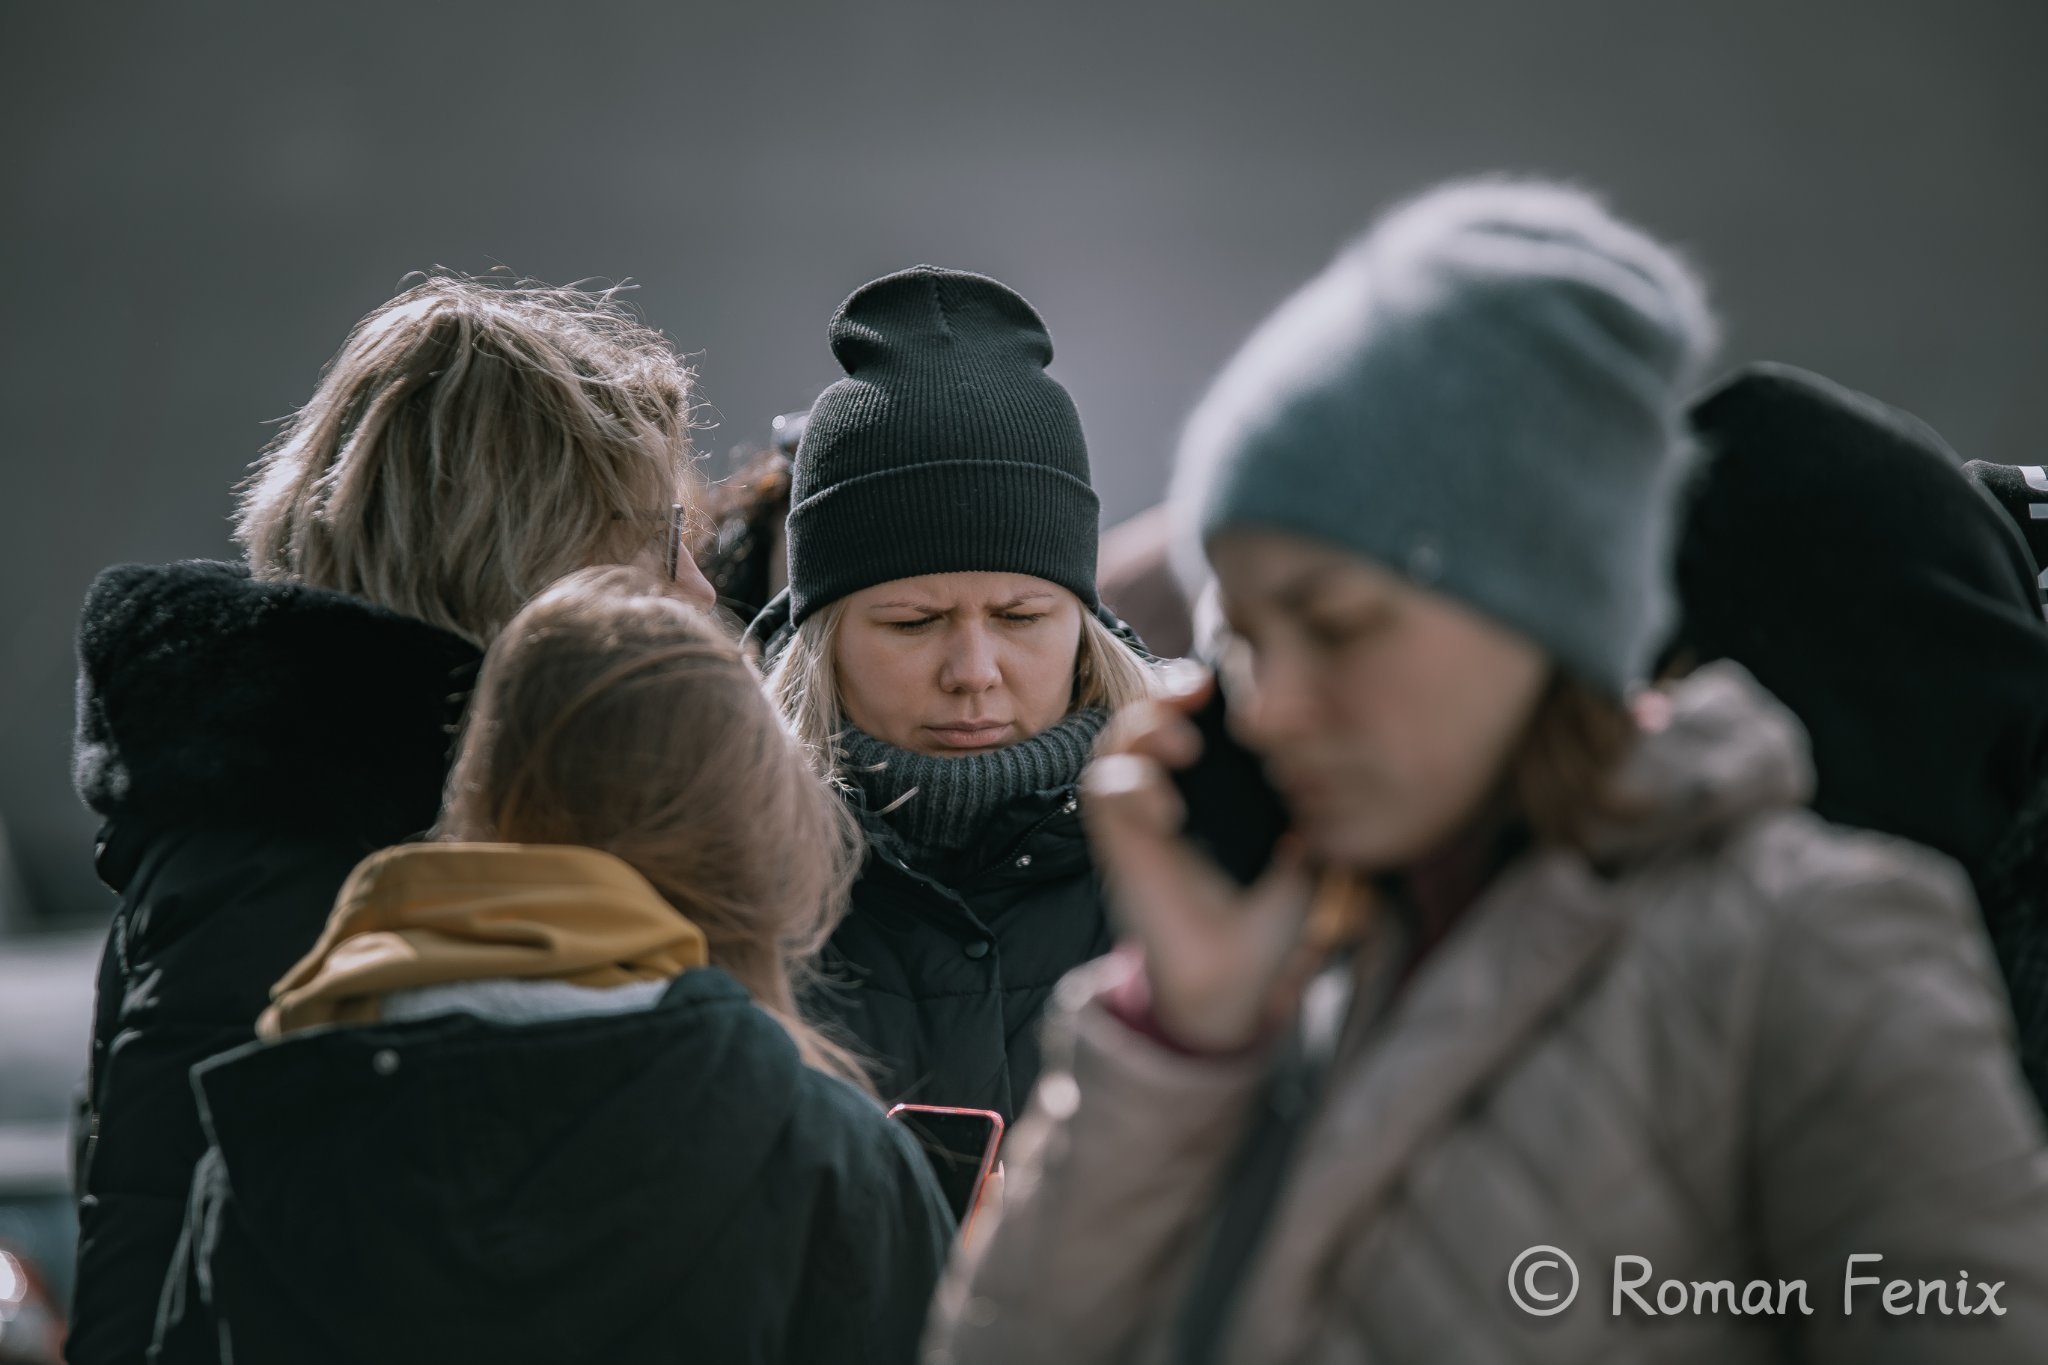 Станом на 10 годину 9 березня, за офіційними даними до Мукачева приїхали 4157 переселенців, з них 1379 дітей. 